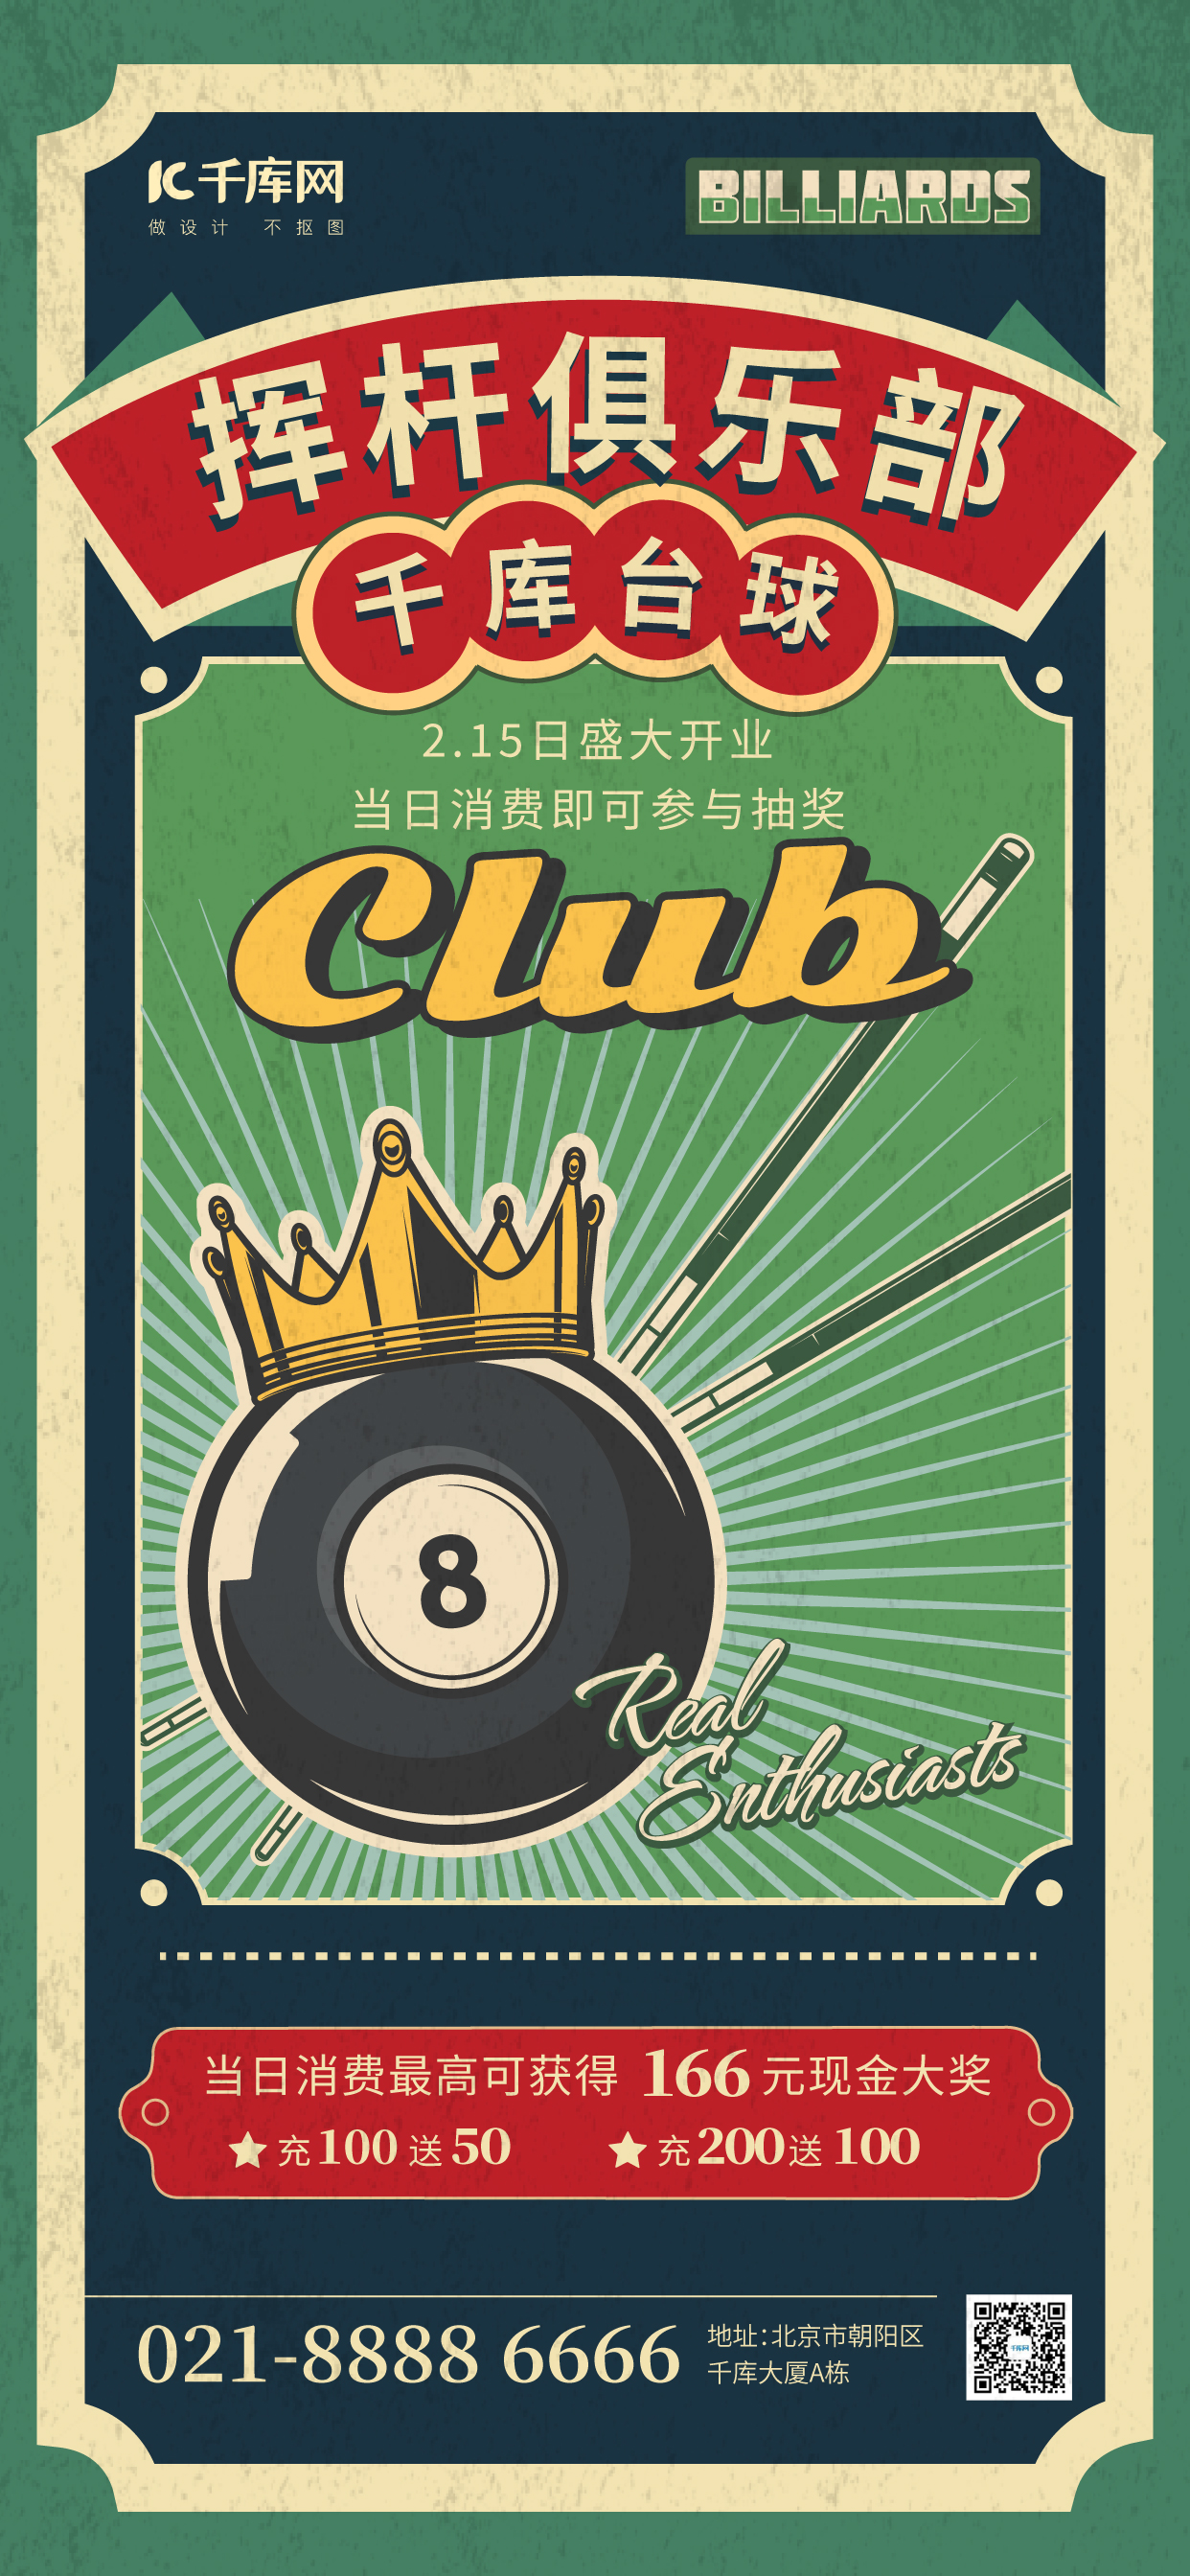 挥杆俱乐部台球 俱乐部绿色复古风开业海报图片